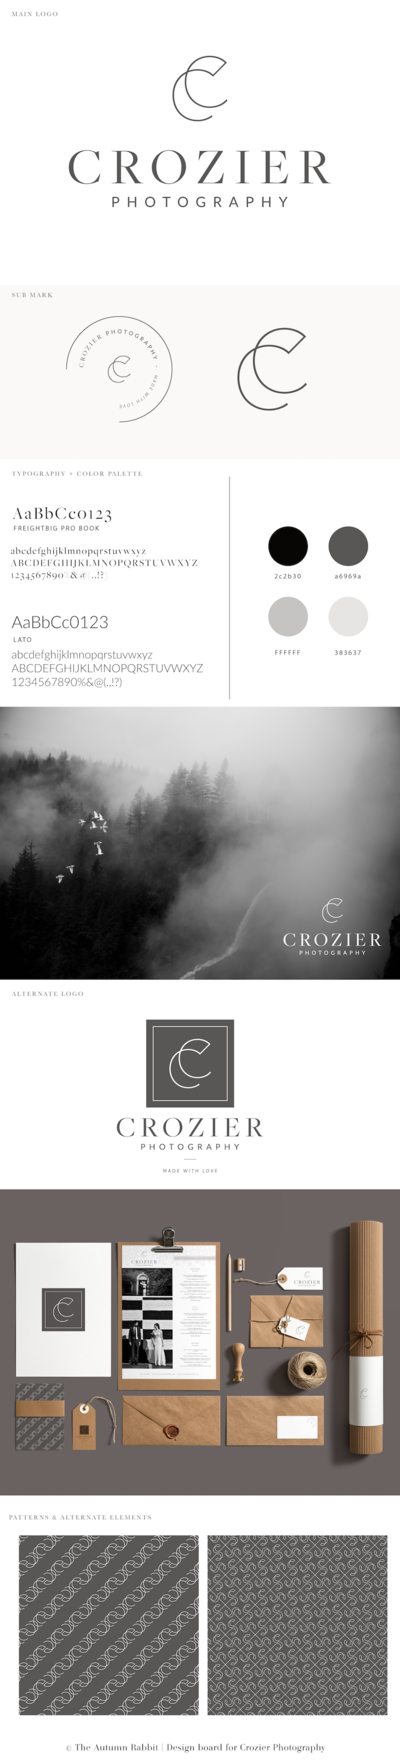 Crozier  Final Branding Board_Board